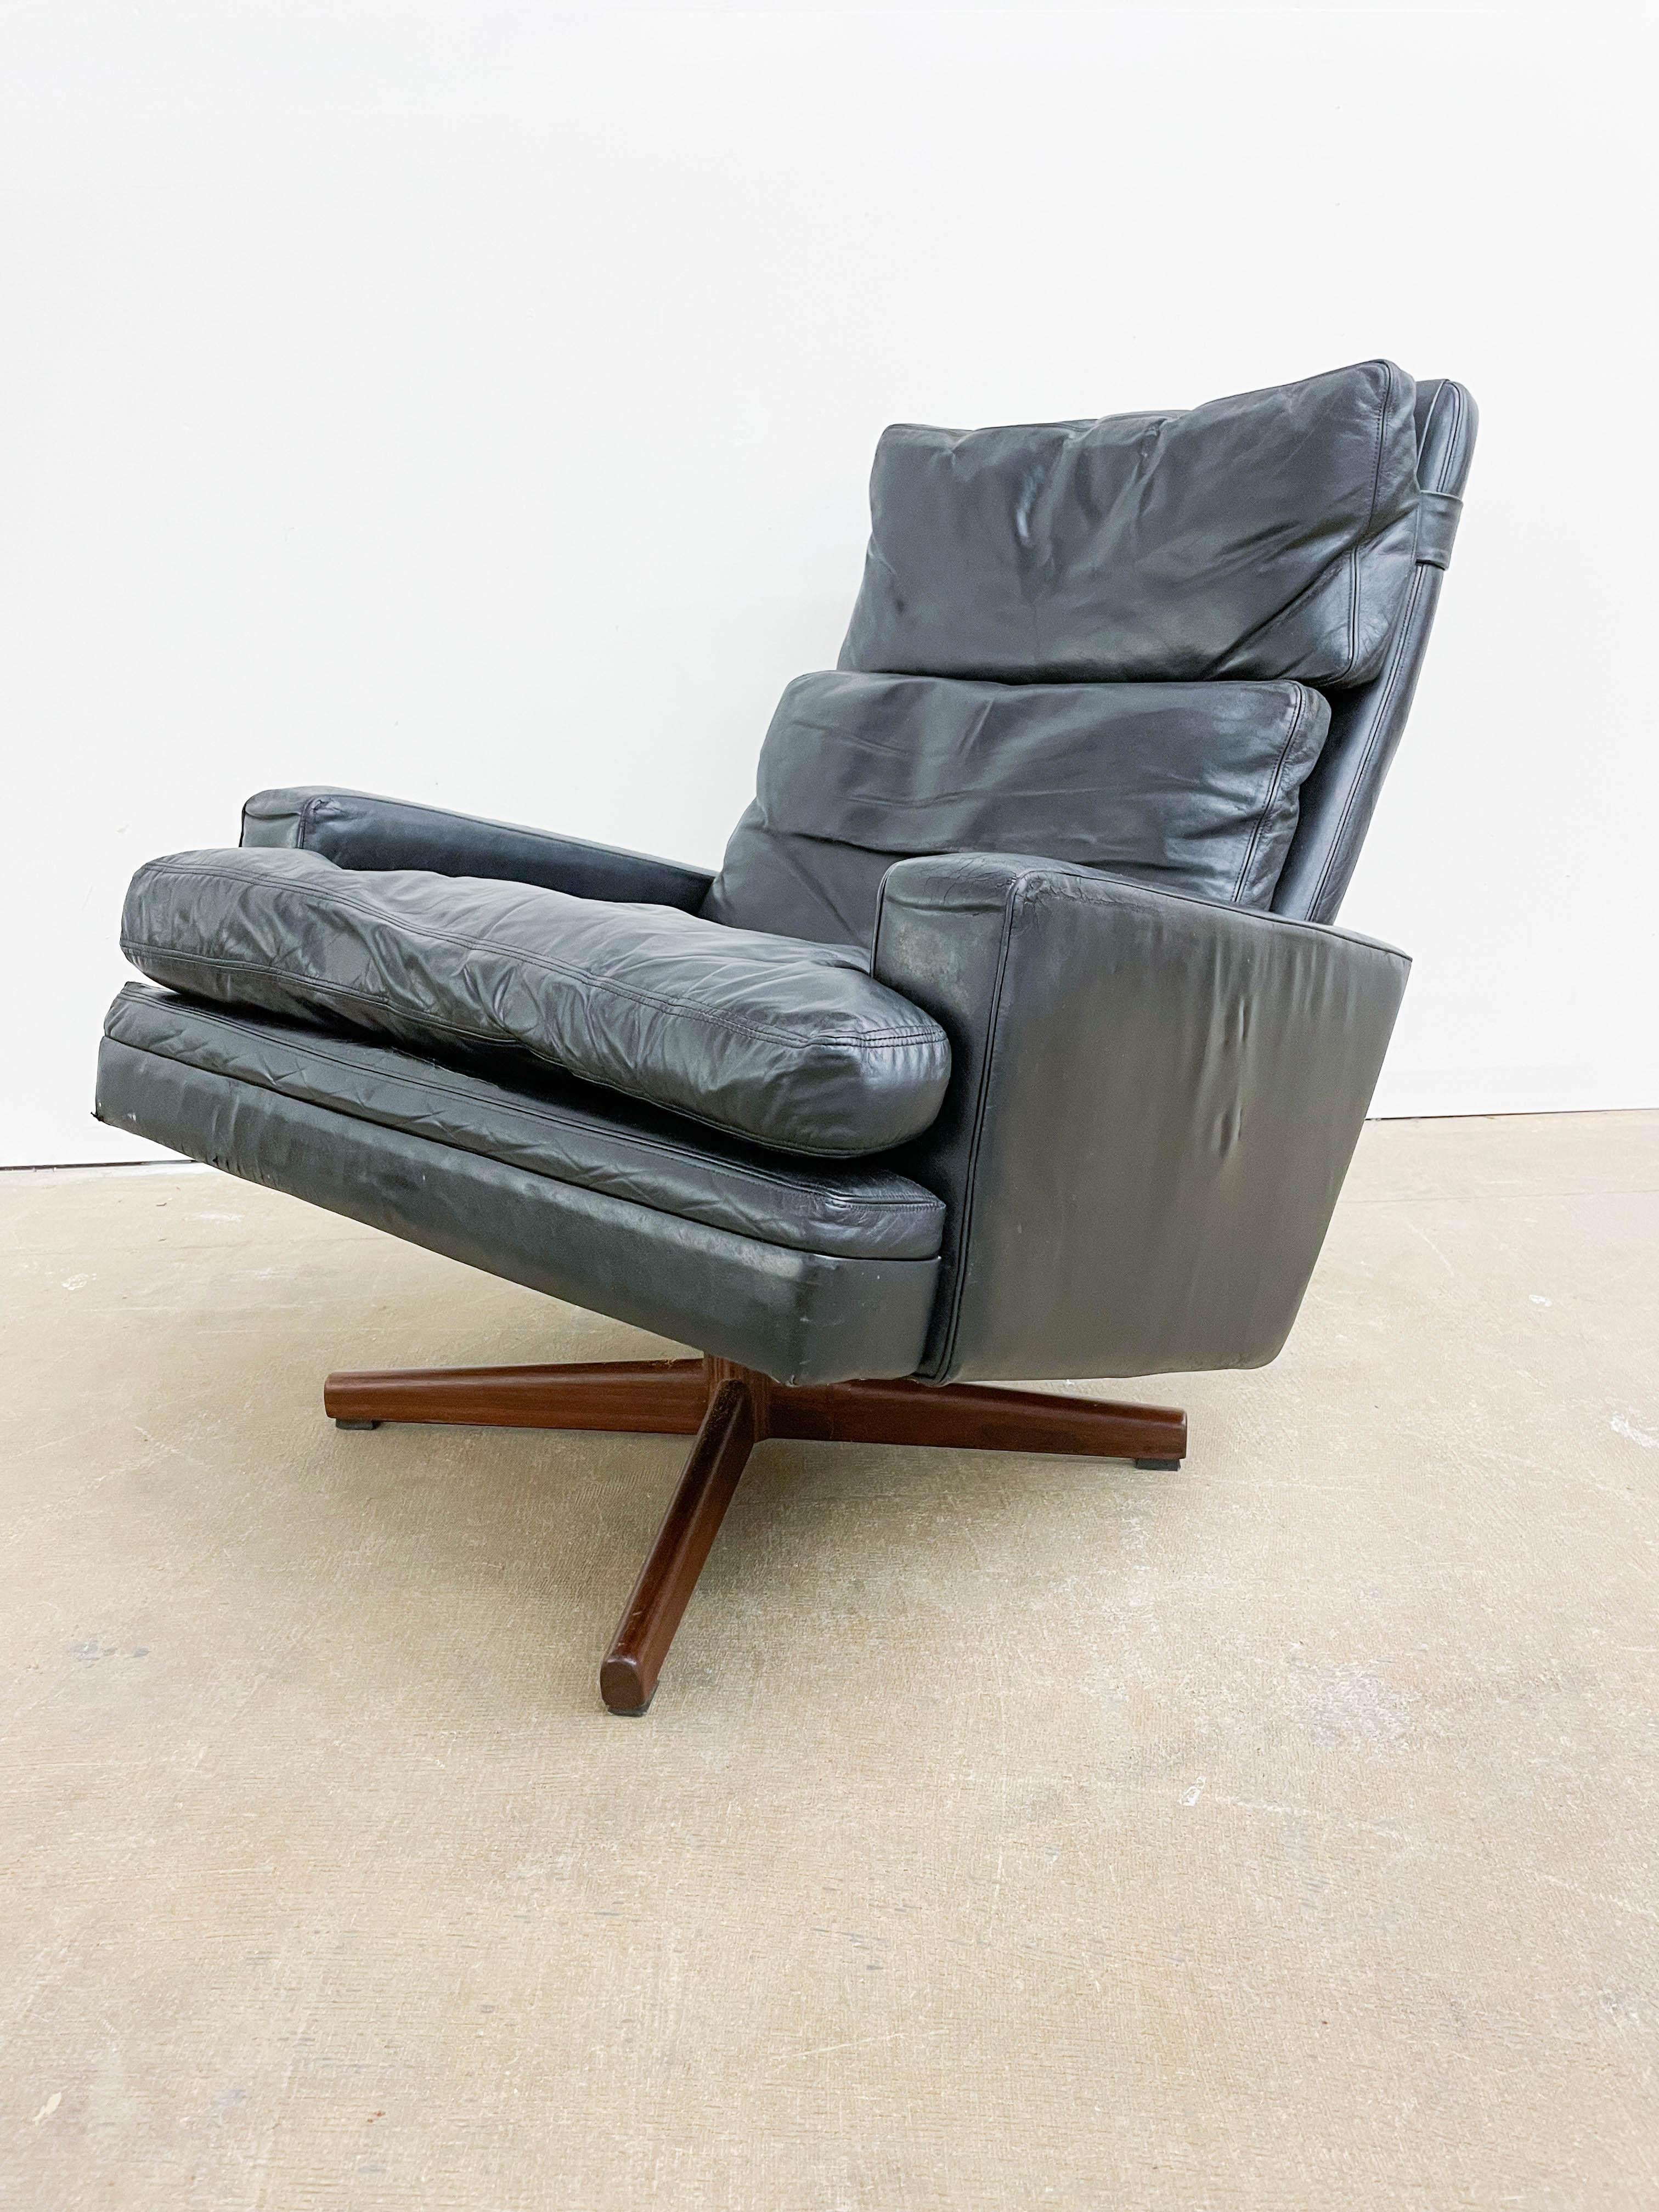 Äußerst bequemer Lounge-Sessel aus Leder auf einem Gestell aus brasilianischem Palisanderholz, entworfen von Fredrik A. Kayser für Vatne Mobler in Norwegen. Dieser in den 1960er Jahren entworfene Stuhl ist ein bequemer, luxuriöser Sitz, der sich